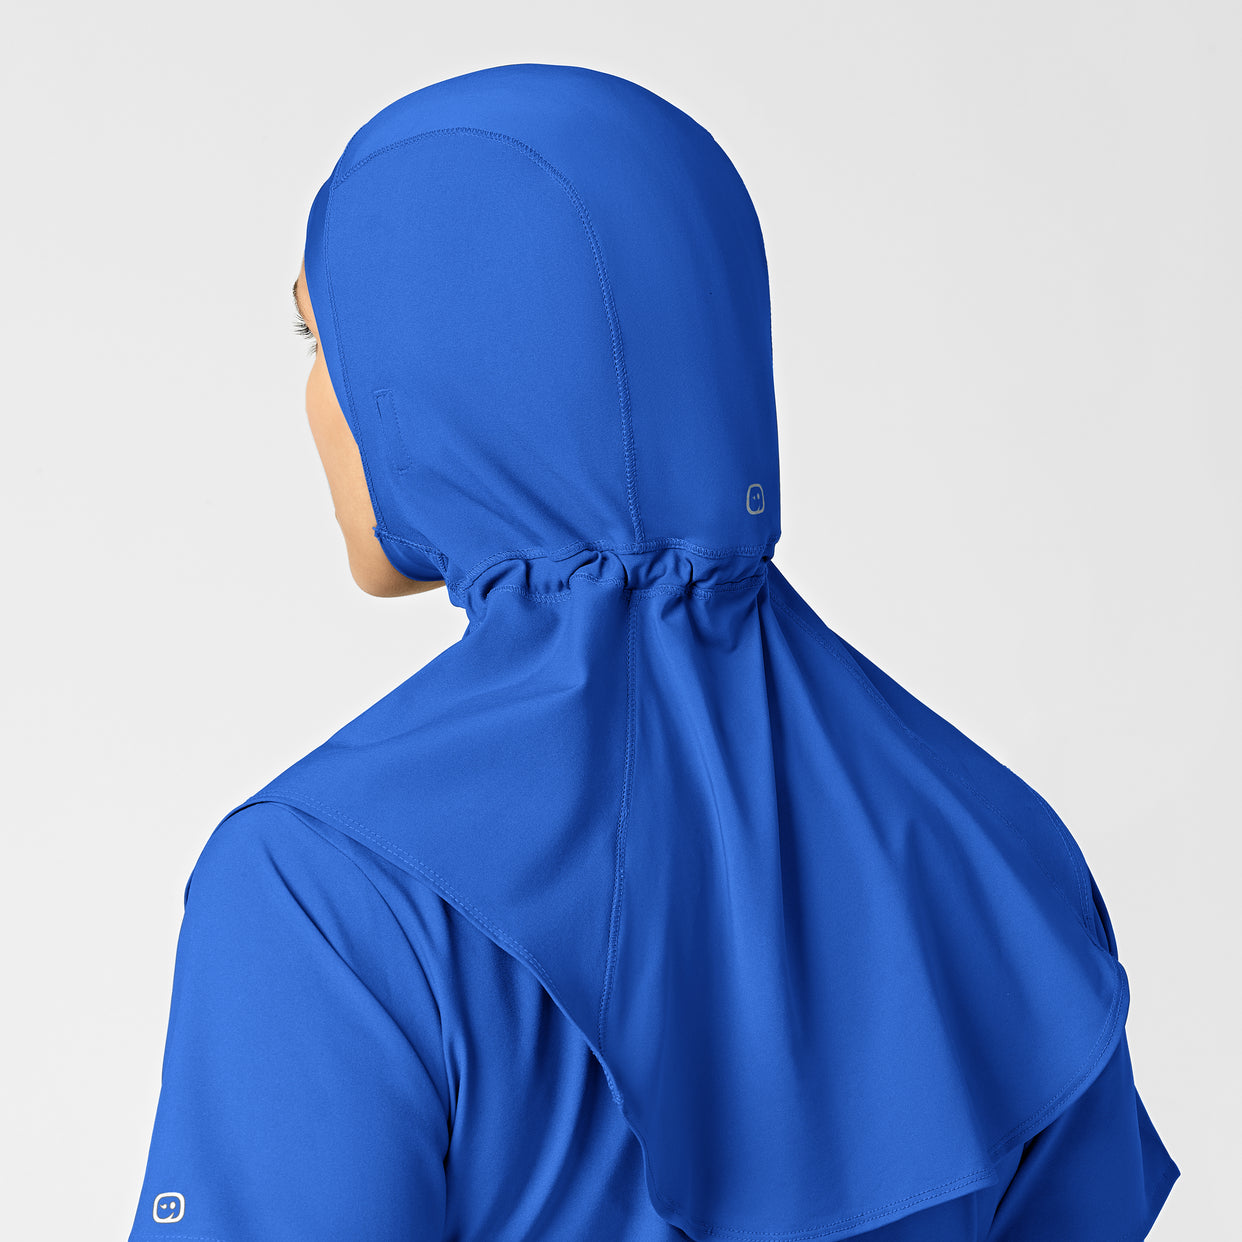 W123 Women's Hijab Royal side detail 2